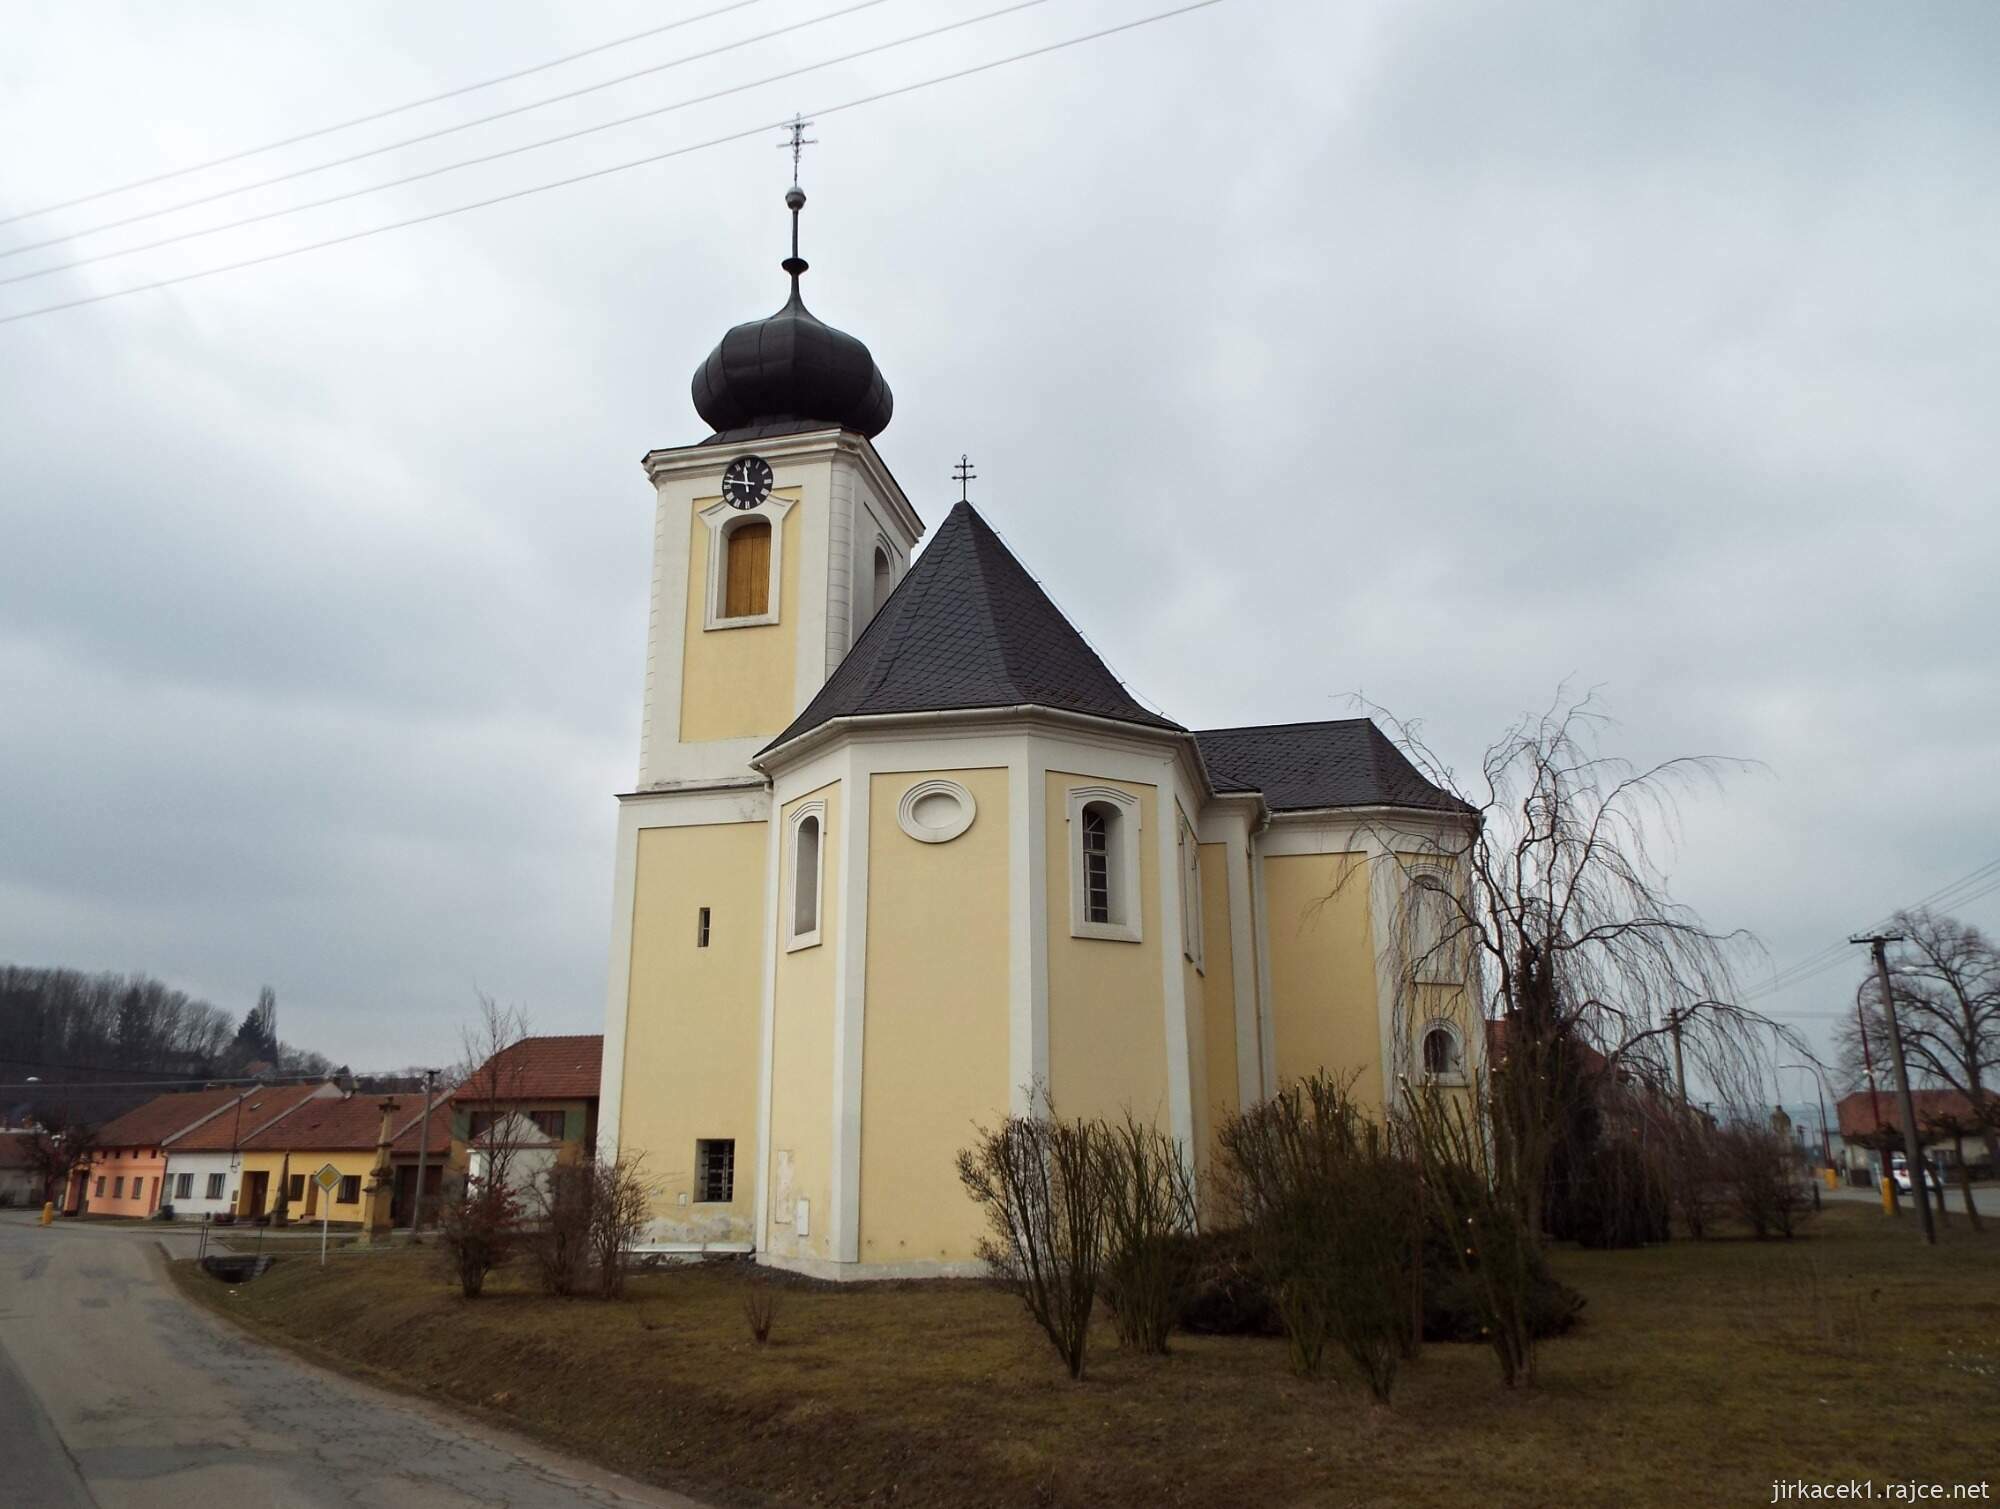 02 - Jaroměřice - Kostel Všech svatých 15 - zadní pohled